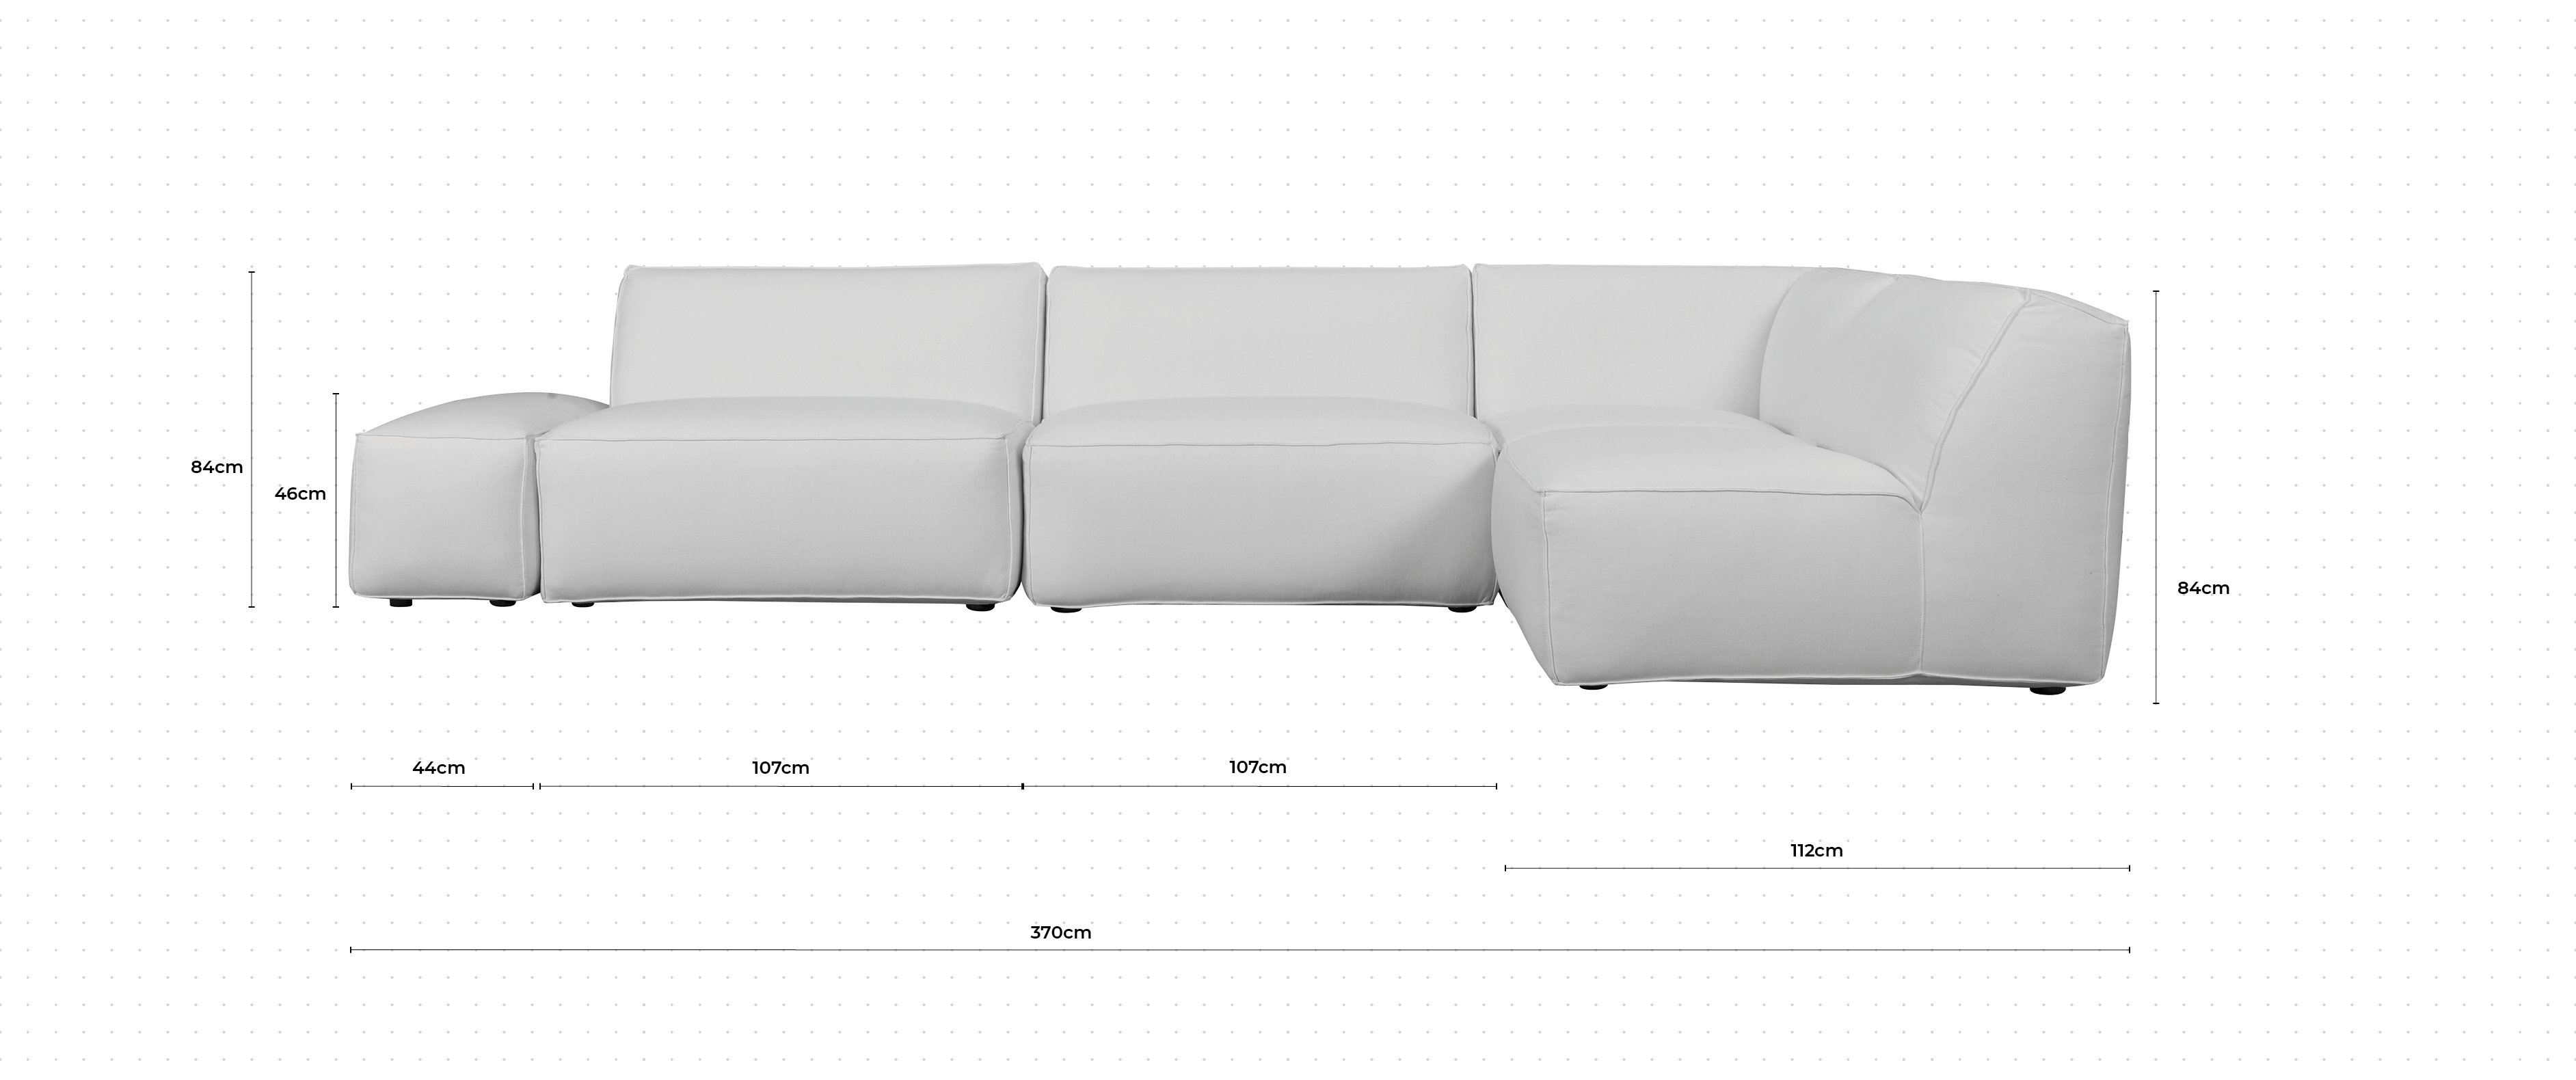 Cape Corner sofa dimensions